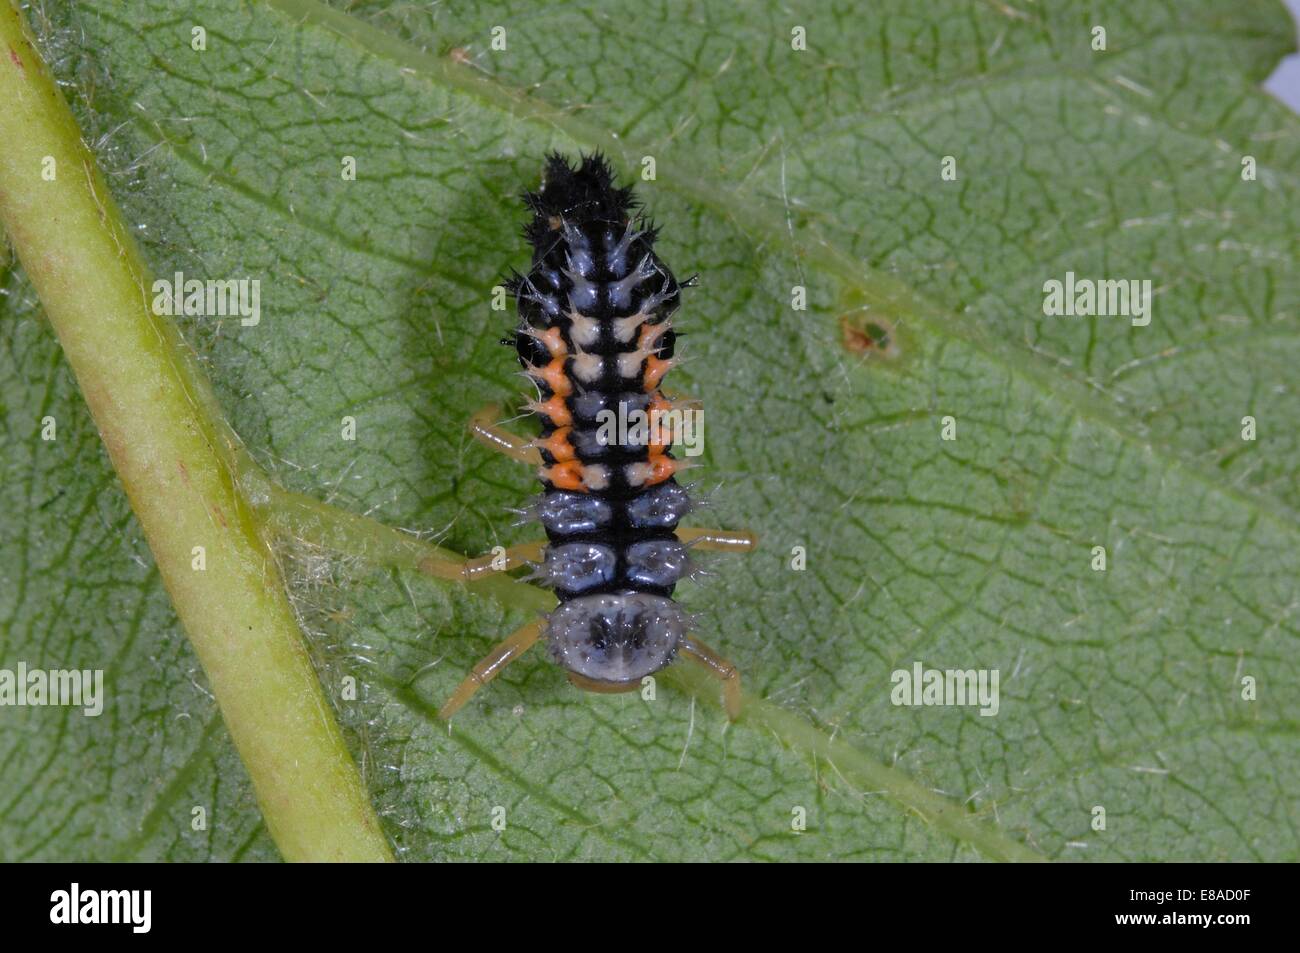 Asiatic Ladybird - Harlequin Ladybird - Multicolored Asian Lady Beetle (Harmonia axyridis) larva on leaf Stock Photo